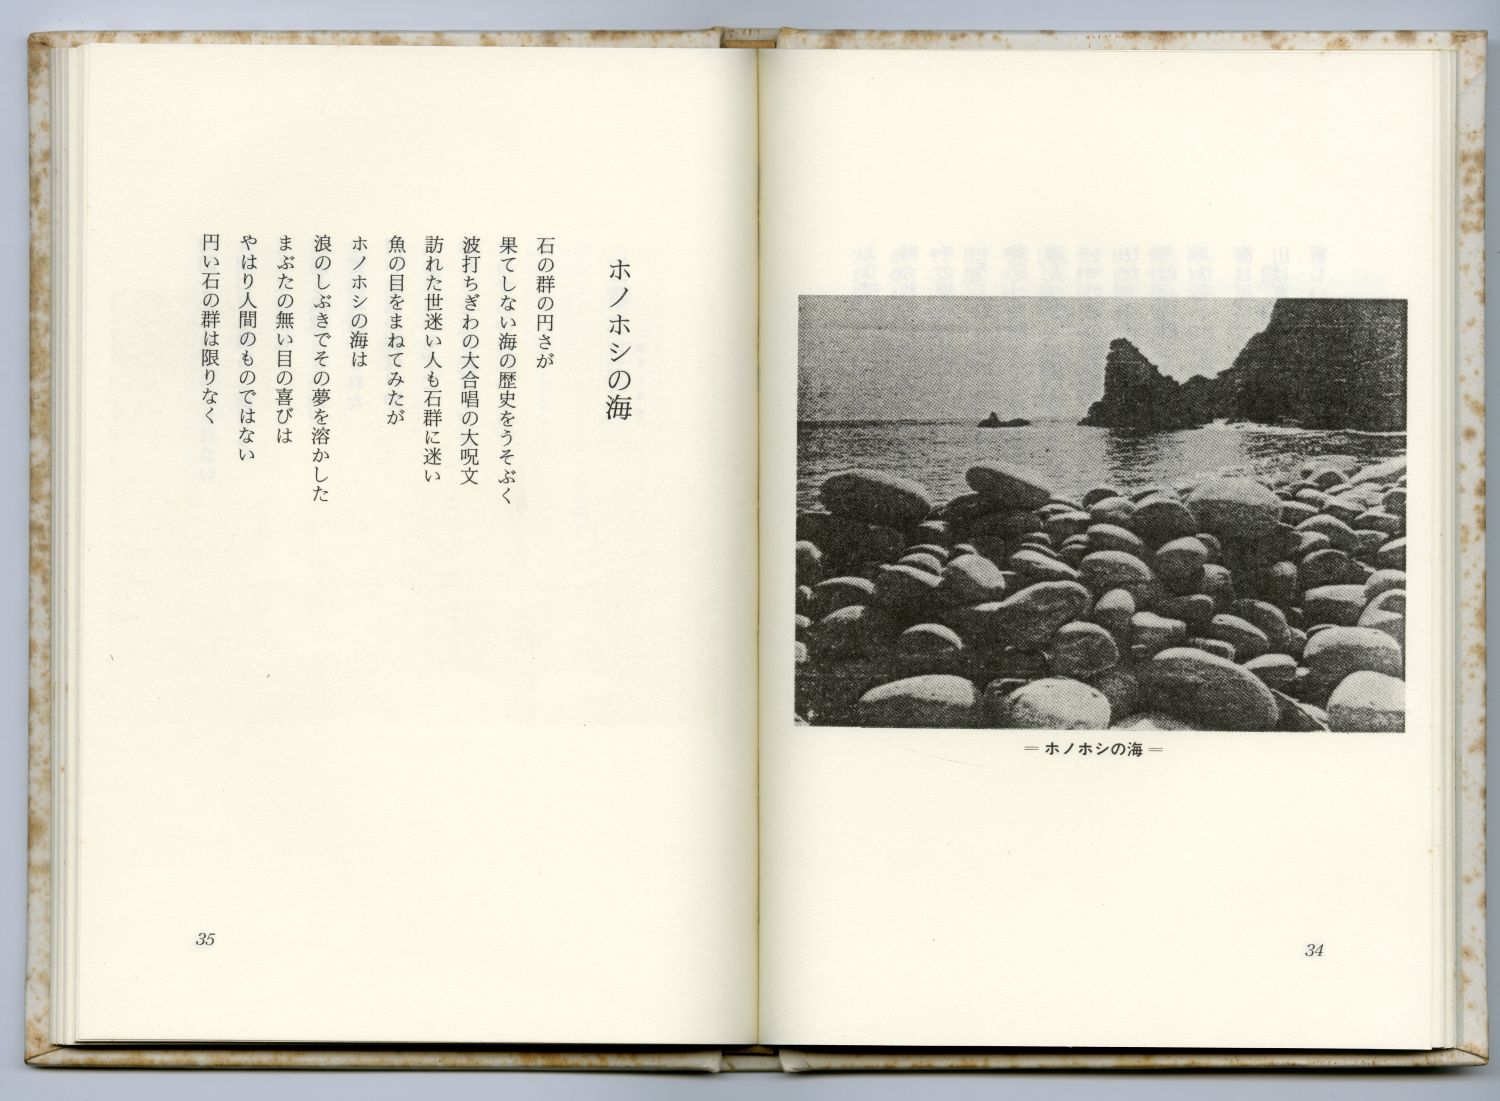 藤井令一『巫島狂奏曲』（1991年、檸檬社）のページから